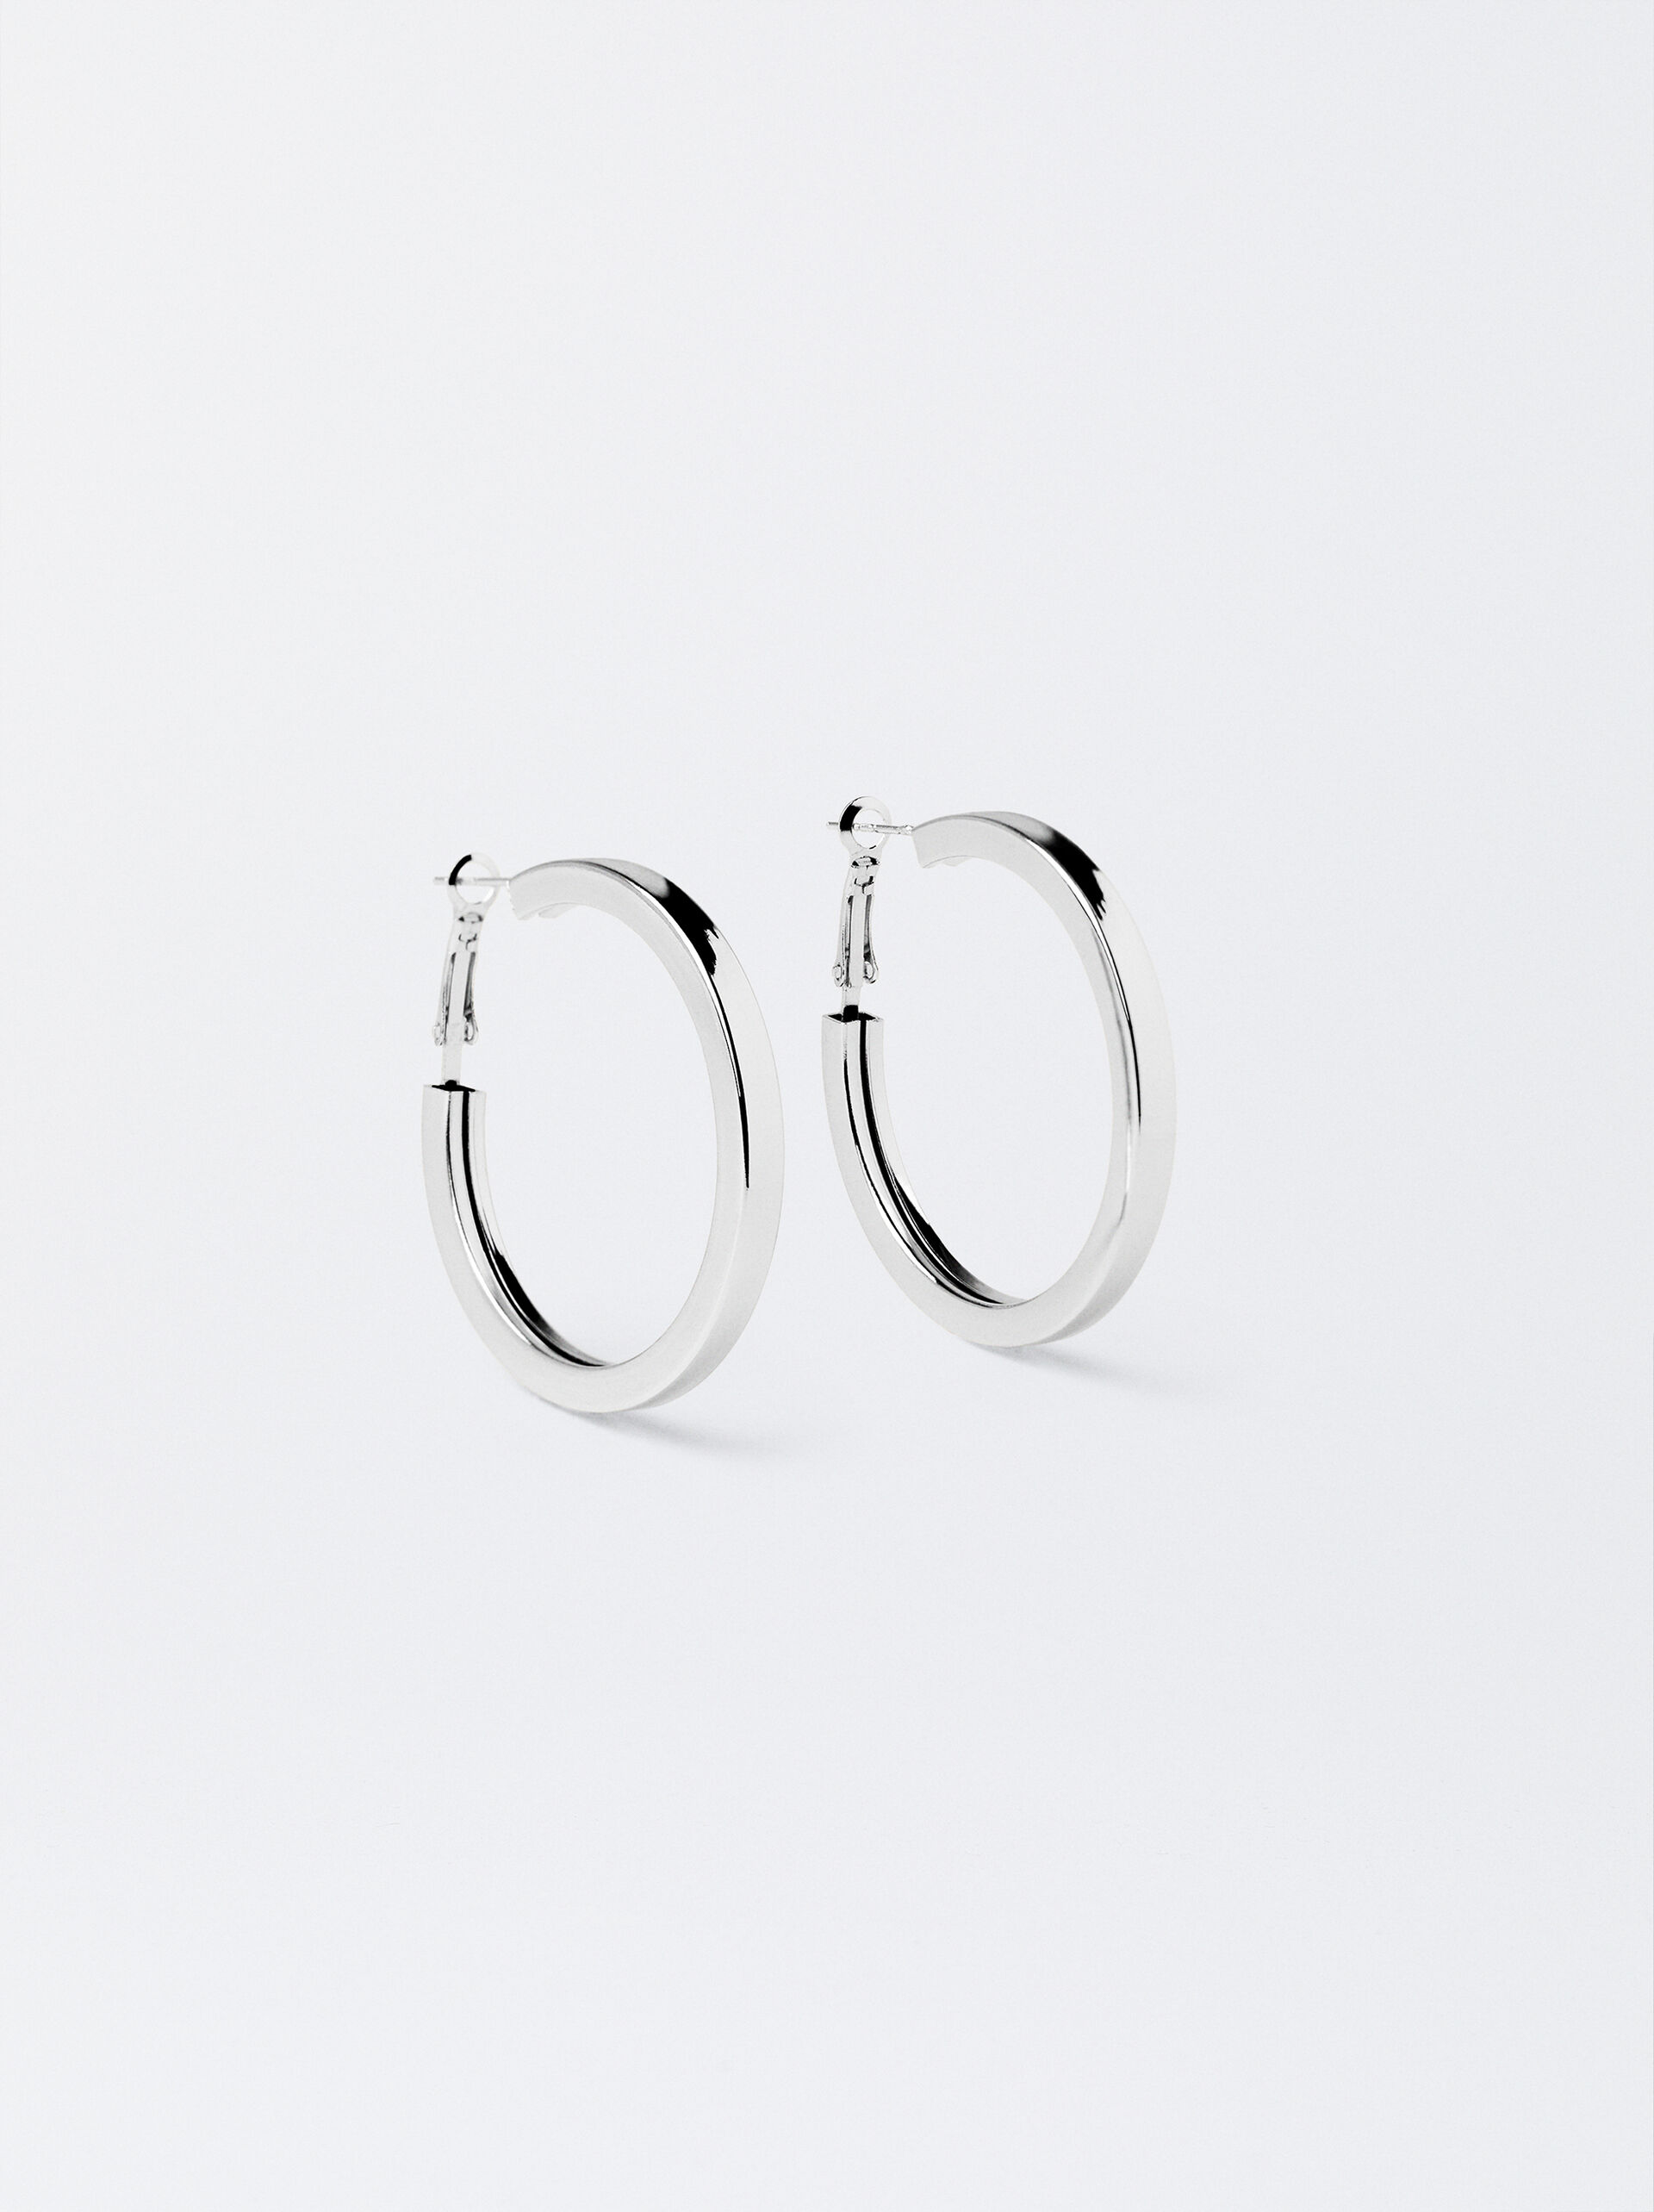 Medium Silver-Plated Hoop Earrings image number 0.0